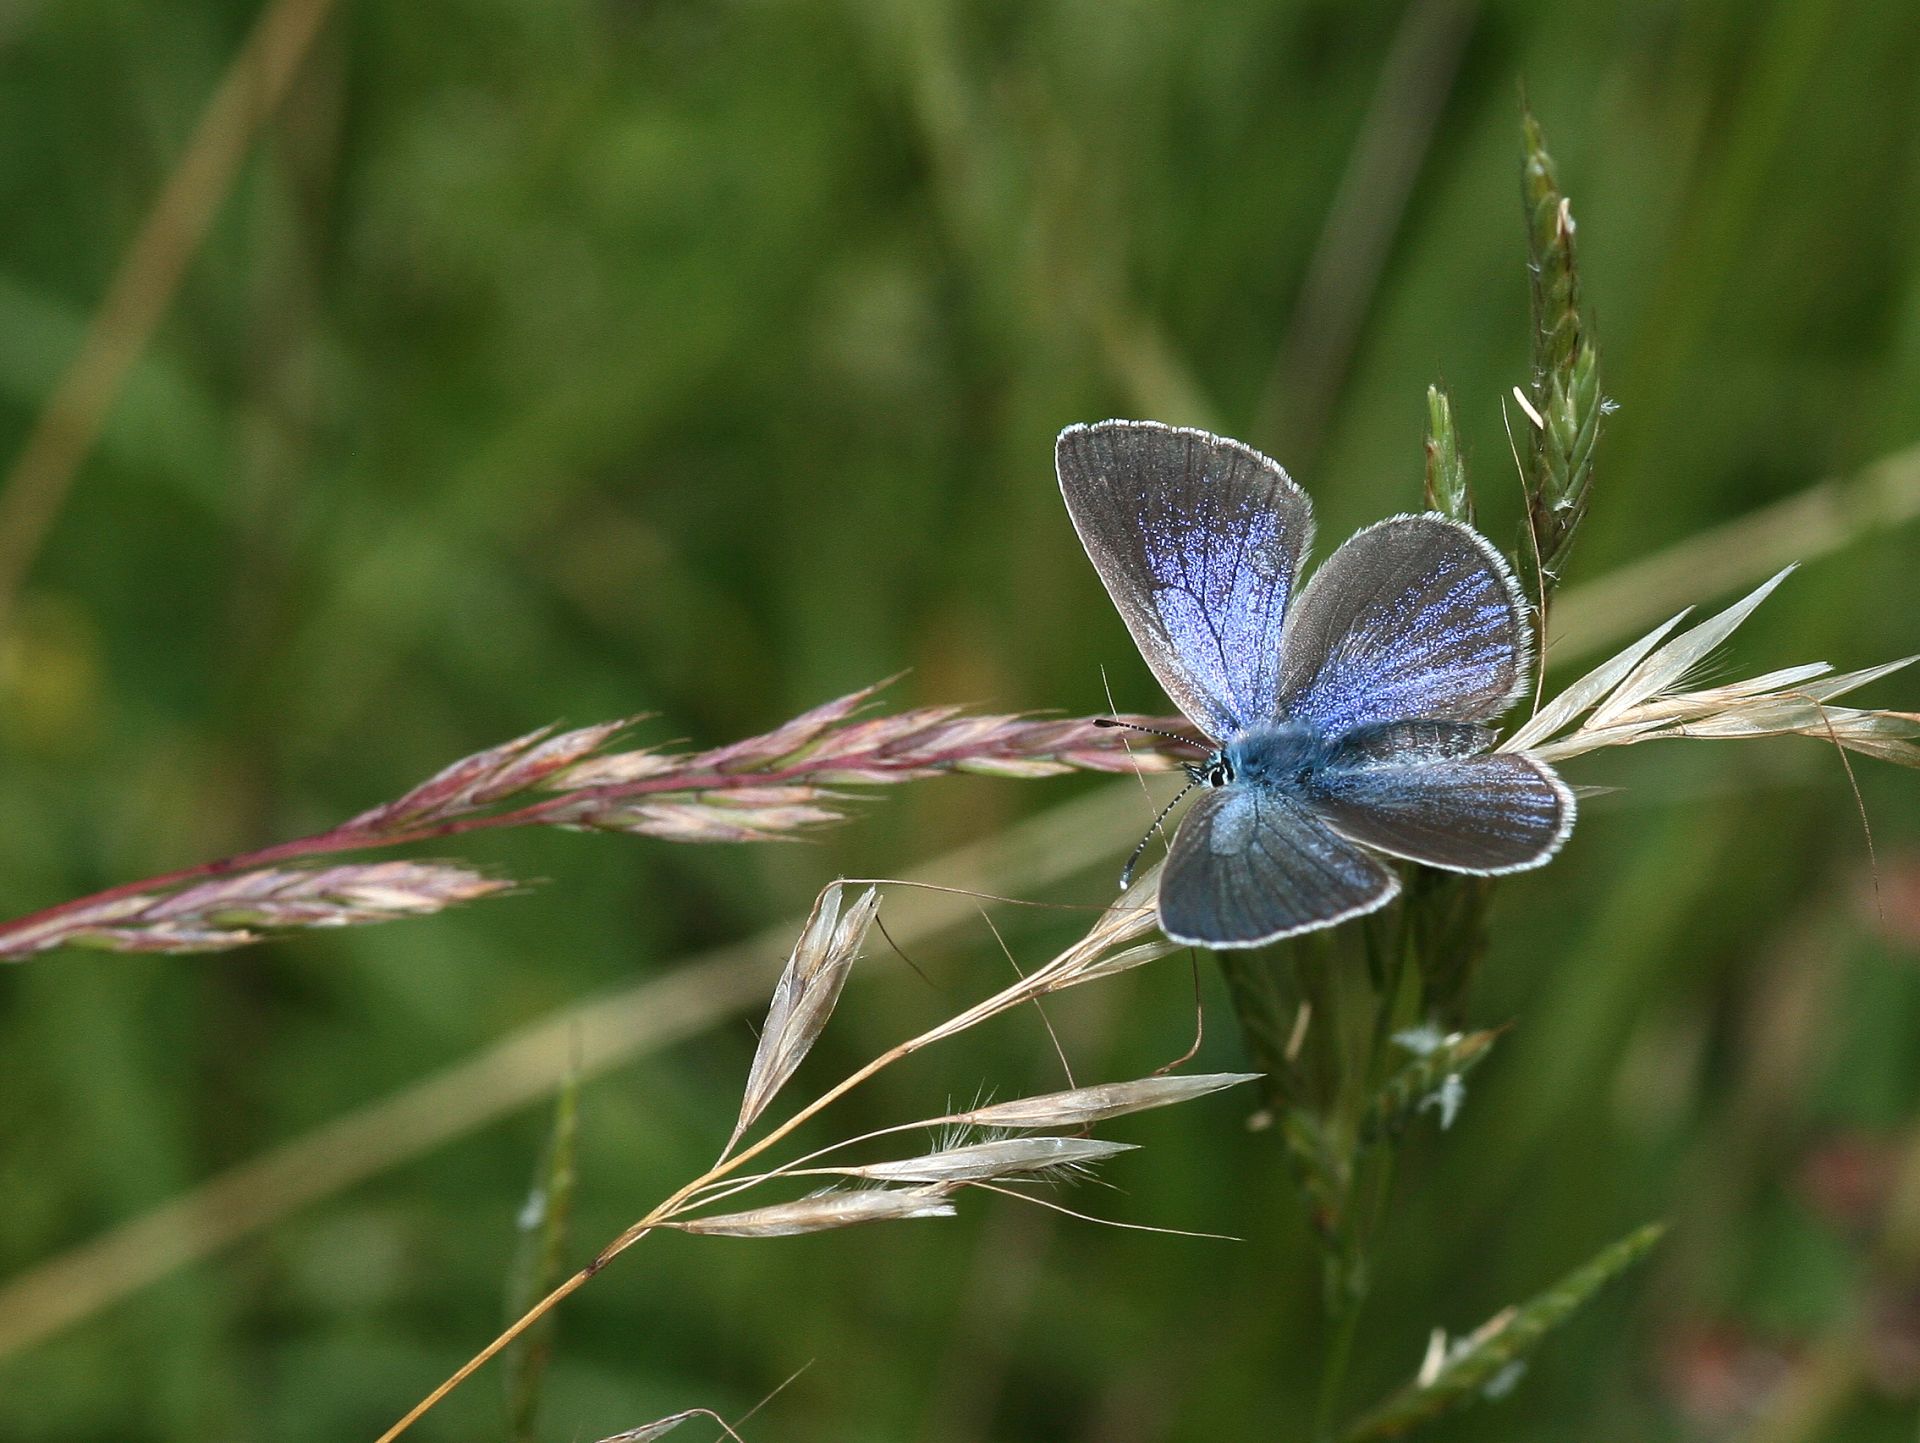 Das Bild zeigt in Nahaufnahme einen blauen Schmetterling auf einem Grashalm. Es handelt sich um einen Alexis-Bläuling in Oberndorf.